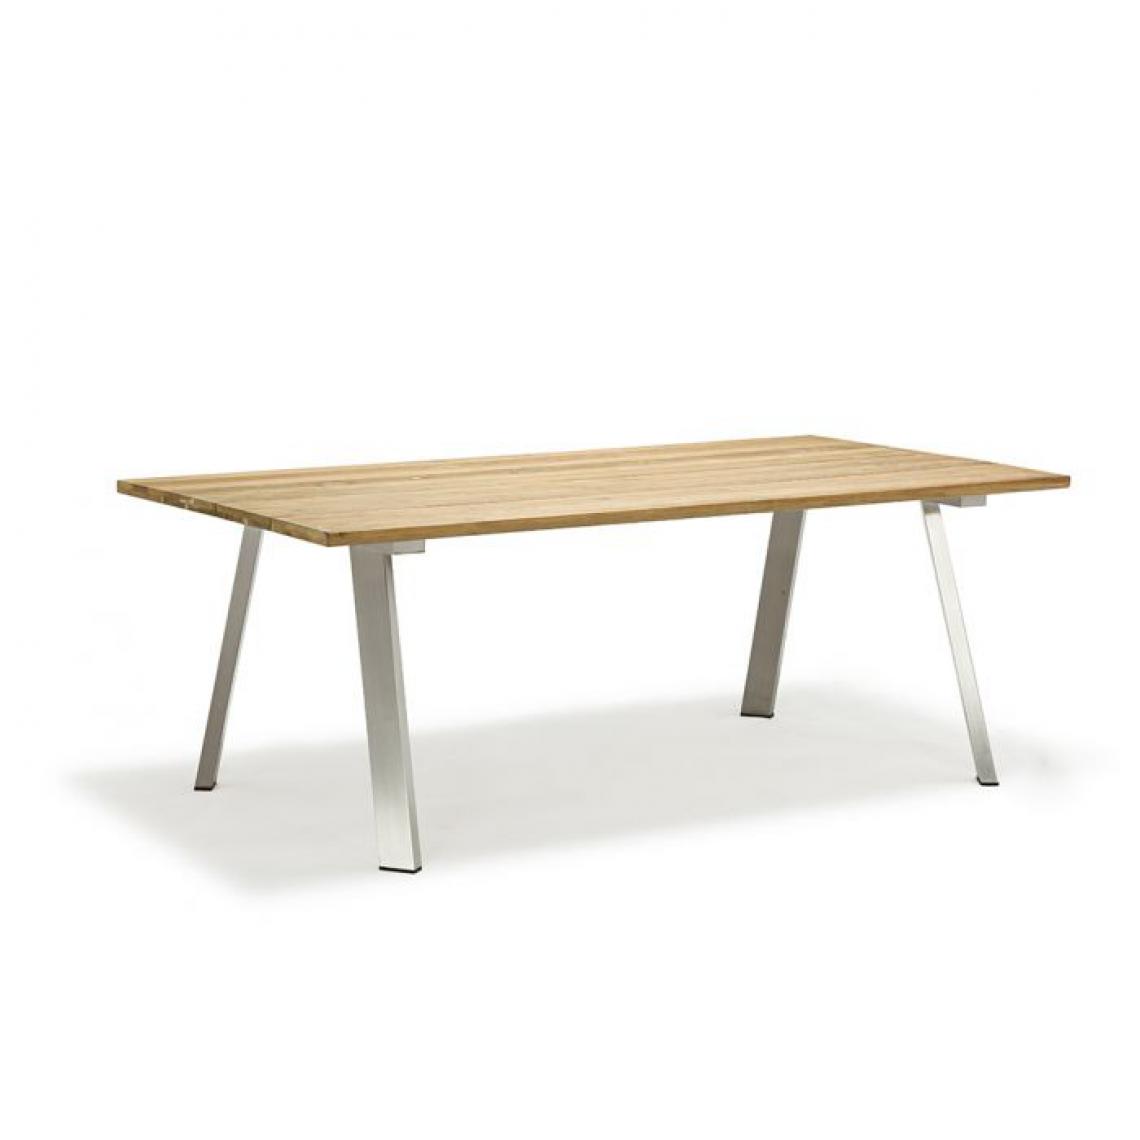 Alter - Table avec pieds en acier inoxydable et plateau en bois de teck de 3 mm Fabriqué en Italie, couleur marron, 200 x 100 x 74 cm - Tables à manger